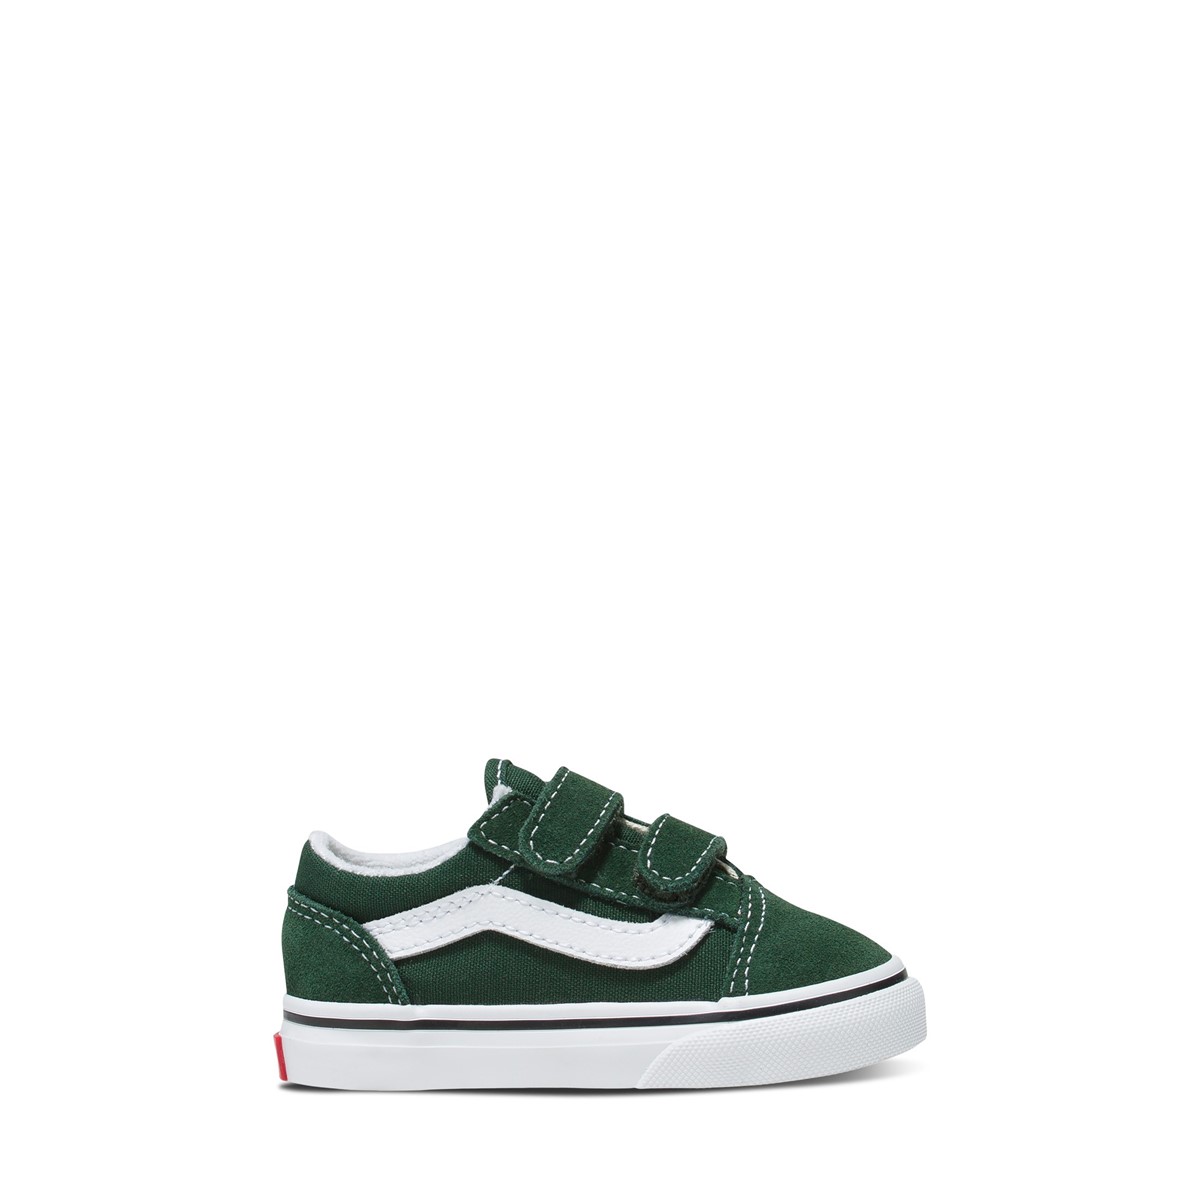 Toddler's Old Skool V Sneakers in Green/White